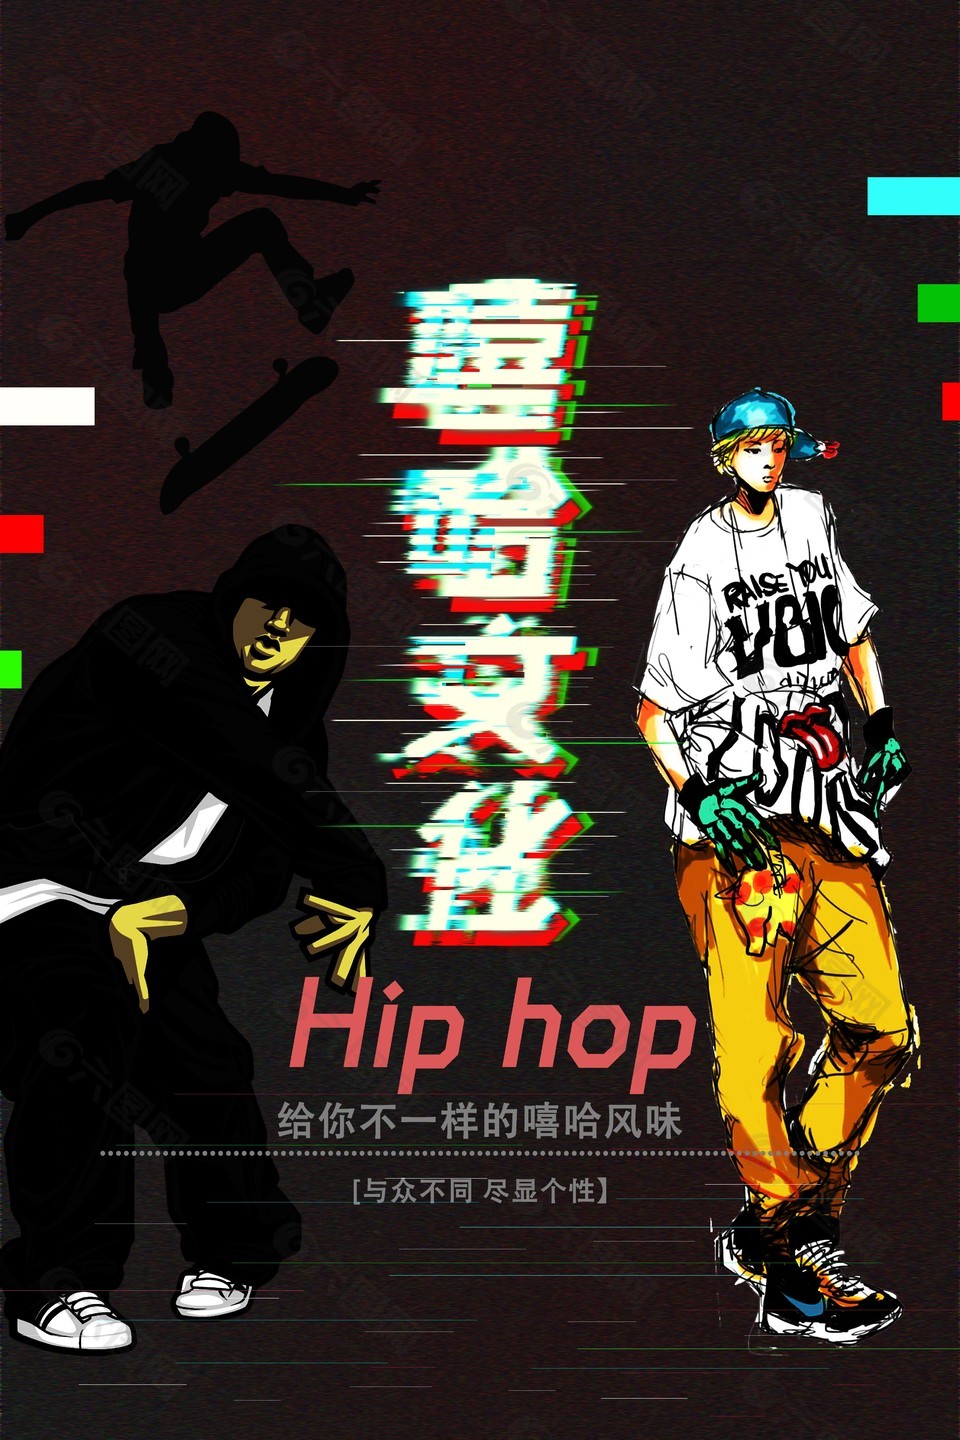 黑色主题背景嘻哈文化海报设计